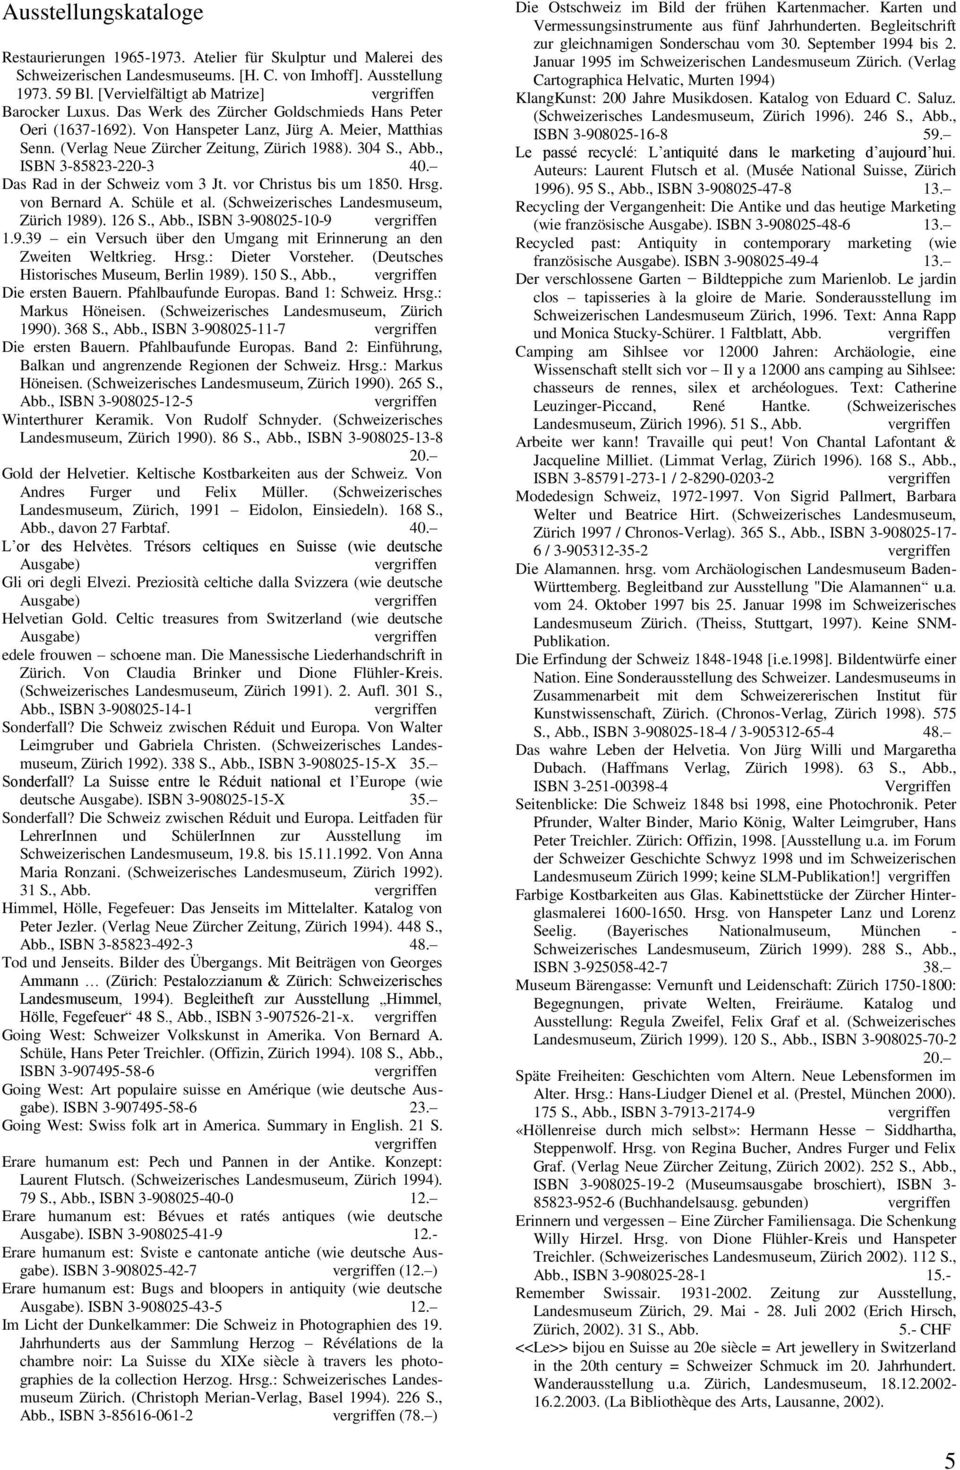 304 S., Abb., ISBN 3-85823-220-3 40. Das Rad in der Schweiz vom 3 Jt. vor Christus bis um 1850. Hrsg. von Bernard A. Schüle et al. (Schweizerisches Landesmuseum, Zürich 1989). 126 S., Abb., ISBN 3-908025-10-9 1.